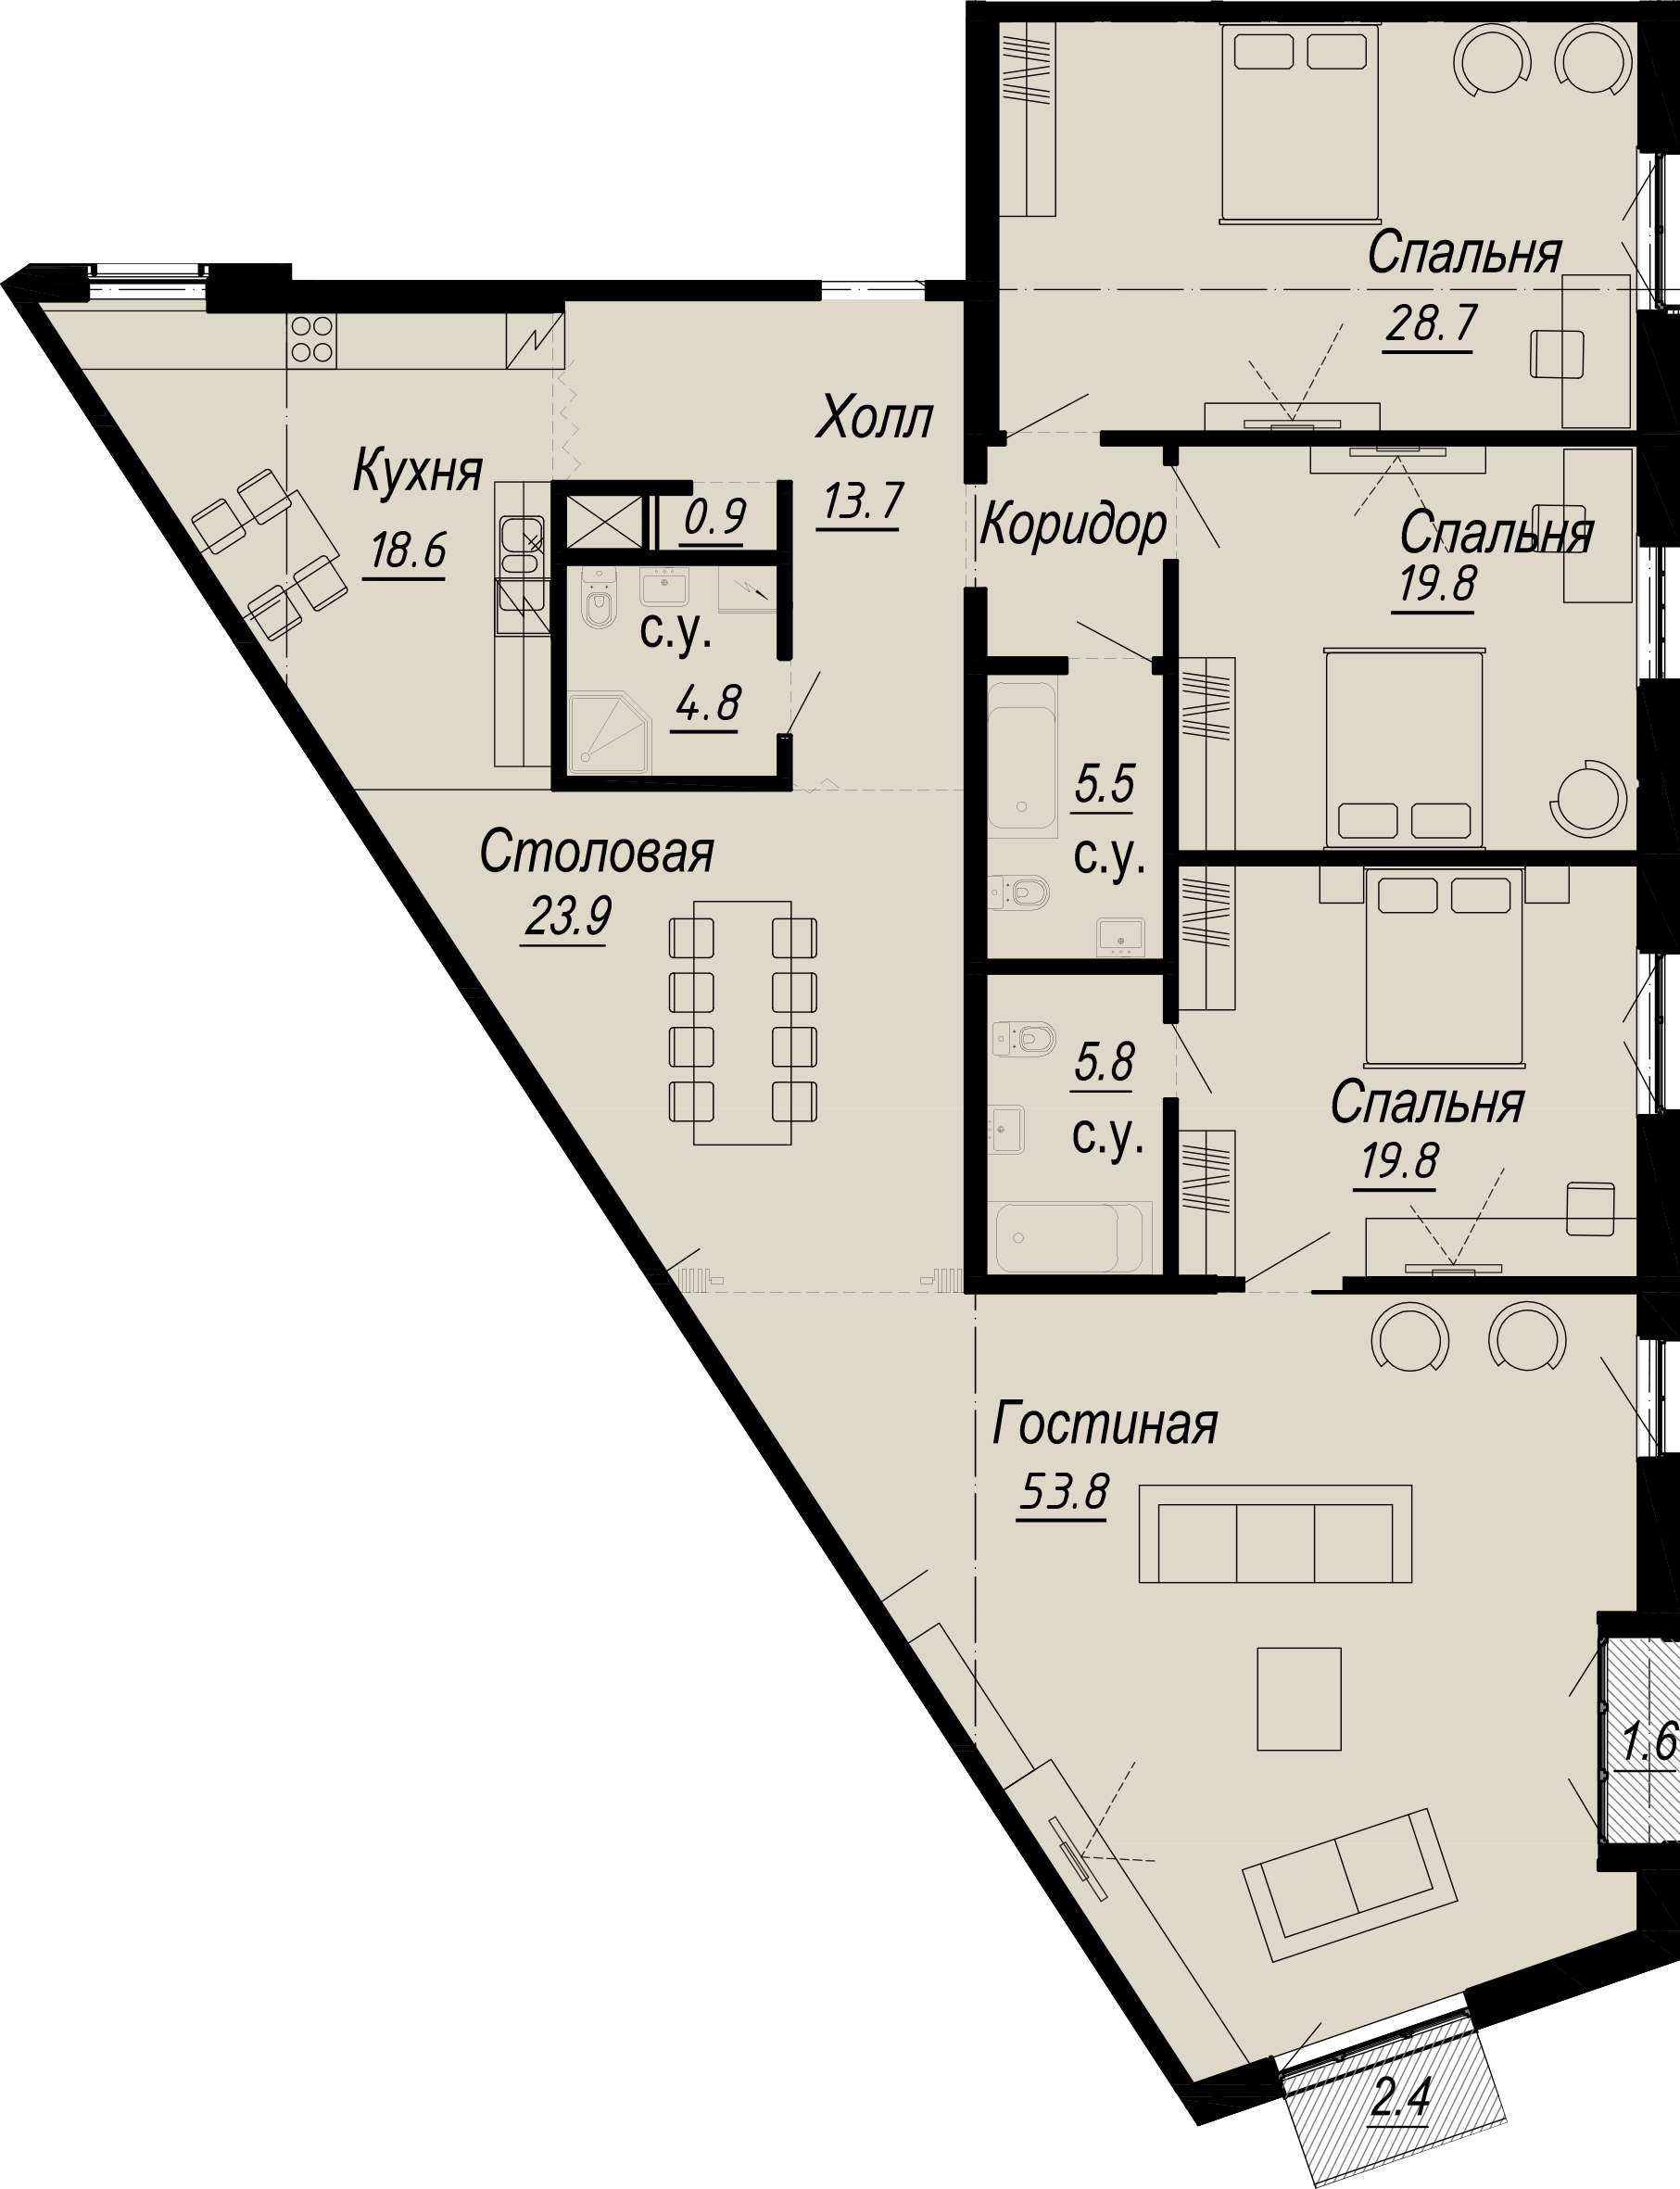 4-комнатная квартира  №8-6 в Meltzer Hall: 204.97 м², этаж 6 - купить в Санкт-Петербурге